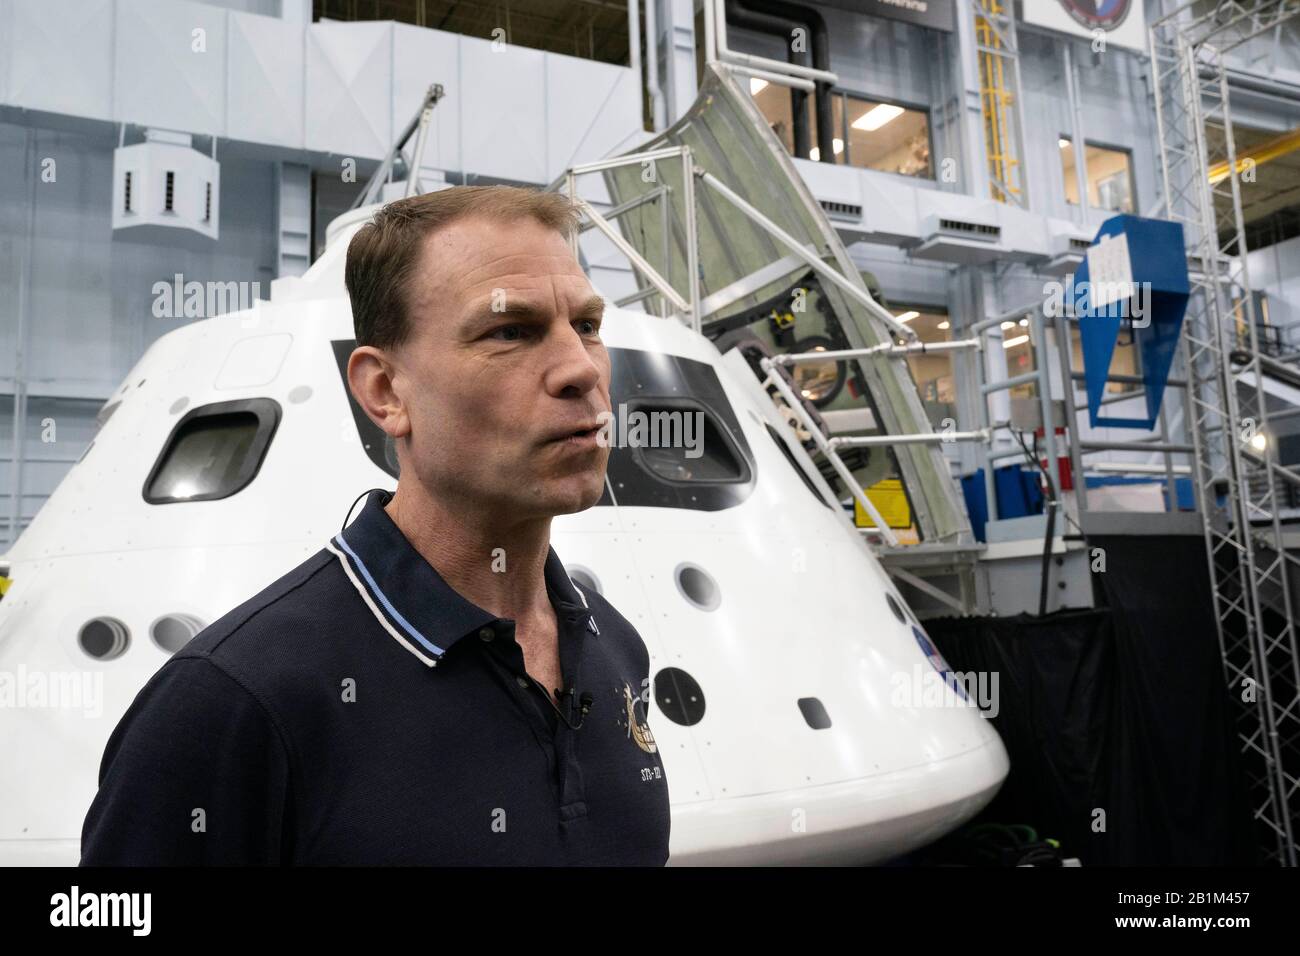 L'astronauta Stan Love della NASA spiega il funzionamento del veicolo spaziale Orion di nuova generazione per visitare i giornalisti mentre la NASA si prepara a lanciare Orion senza equipaggio sulla luna nell'estate del 2020. Foto Stock